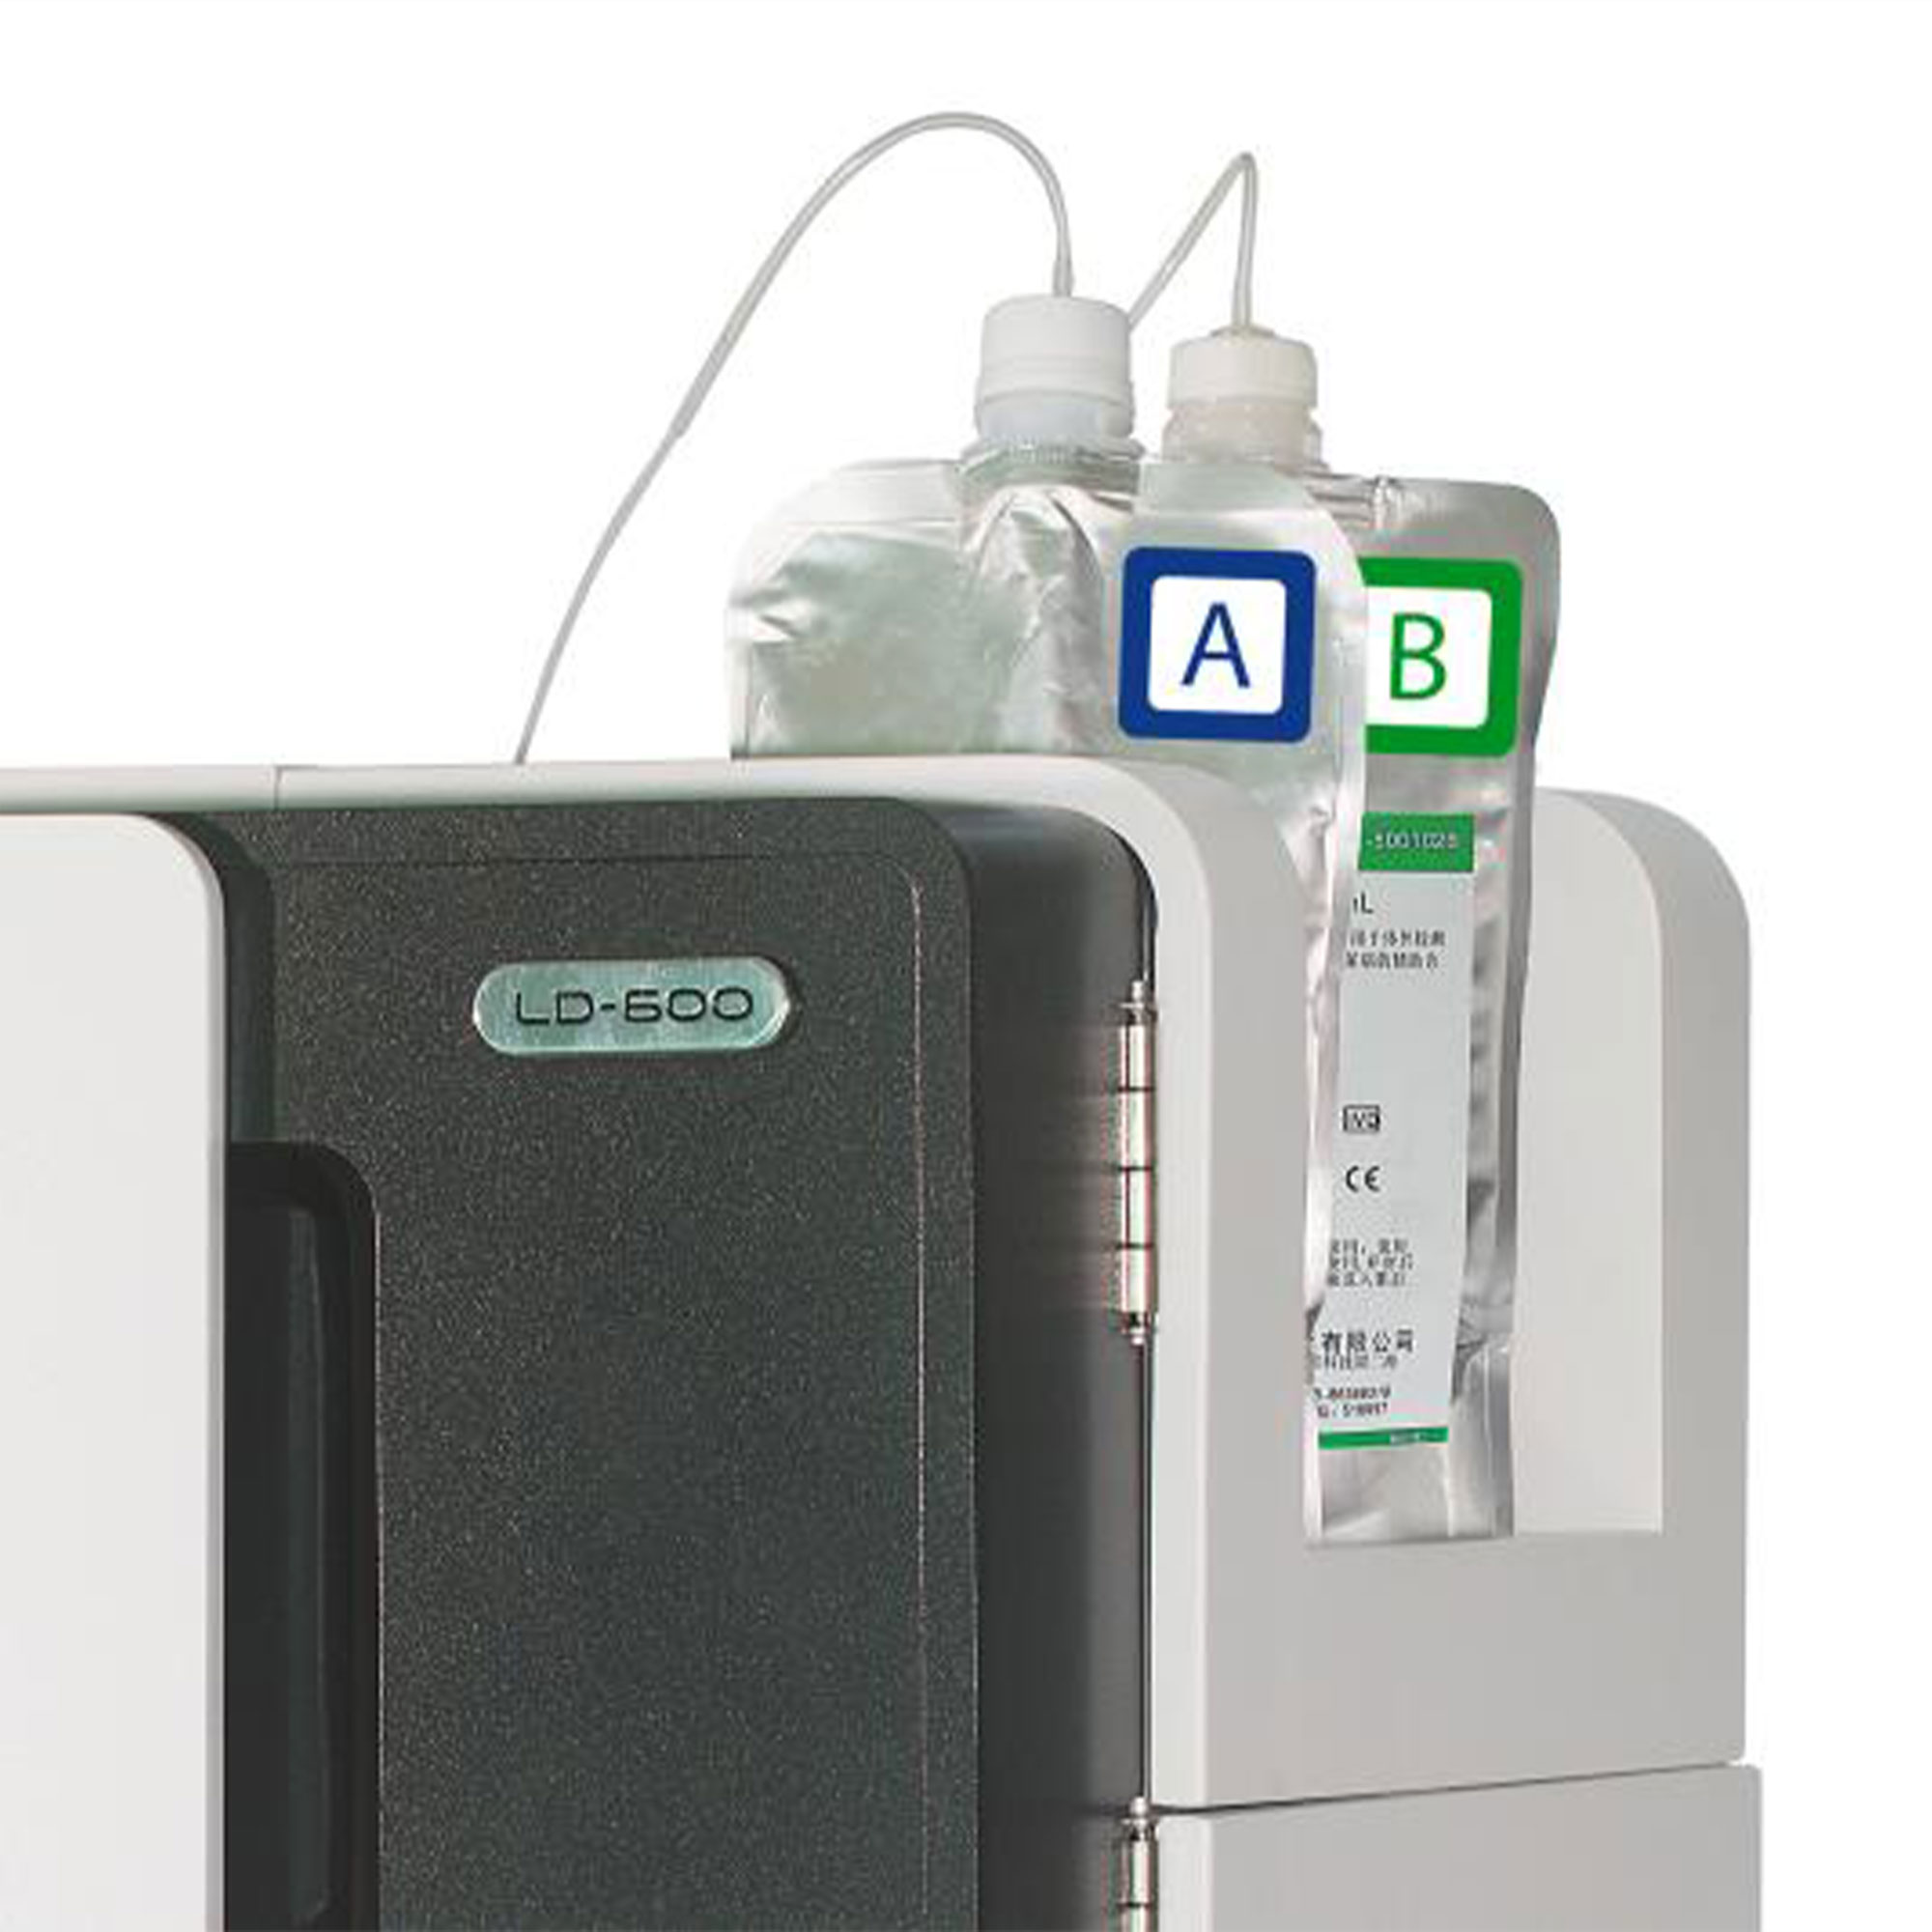 محلول 600 تستی دستگاه A1c LD-600 - GLY COSYLATED HEMPGOLOBIN 600TEST REAGENT KIT - LABLOVATION - کیت - هماتولوژی و بانک خون - آریا تشخیص پارس